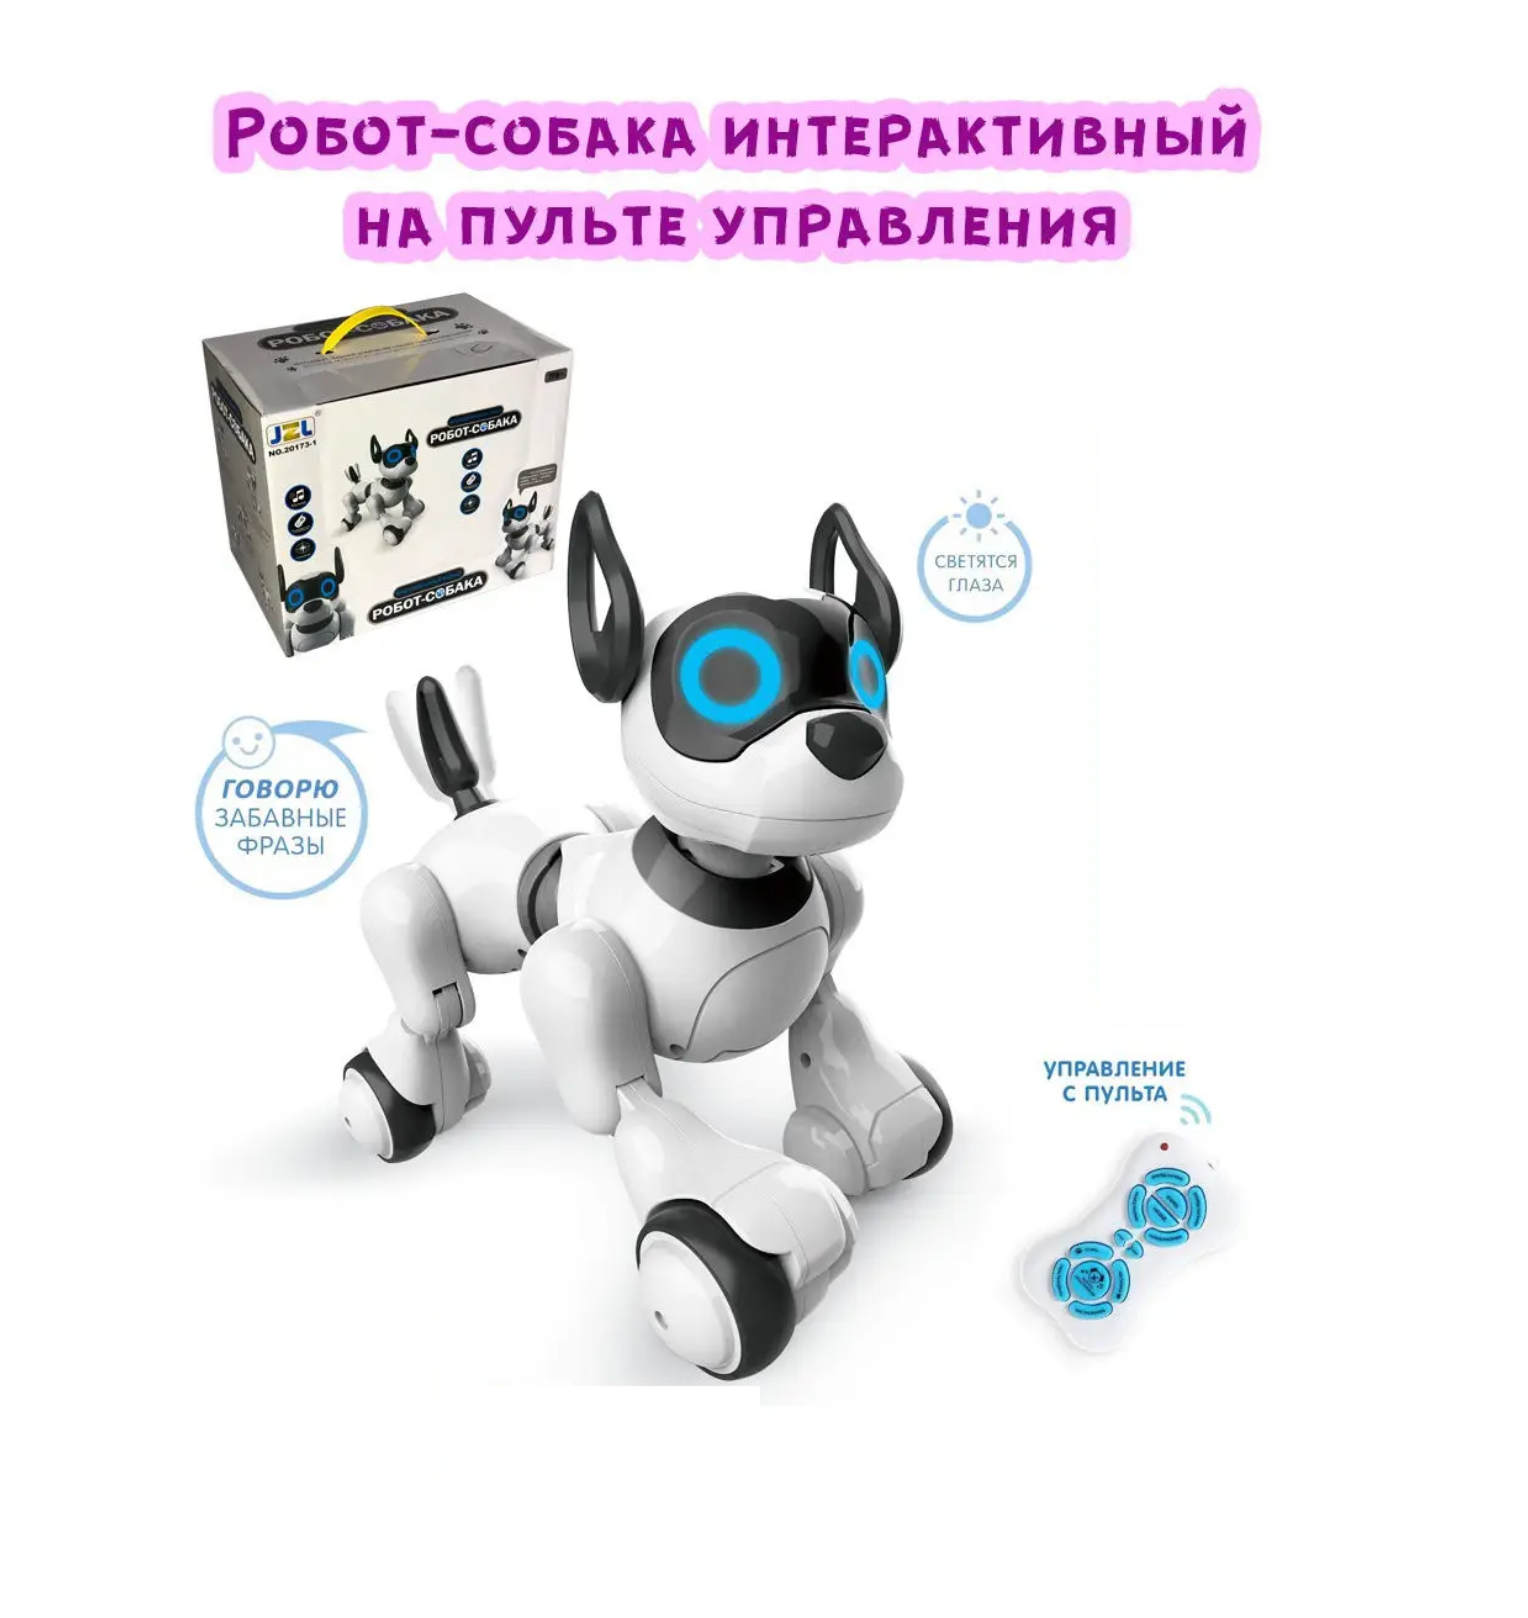 Интерактивная игрушка робот собака на радиоуправлении, световые и звуковые эффекты